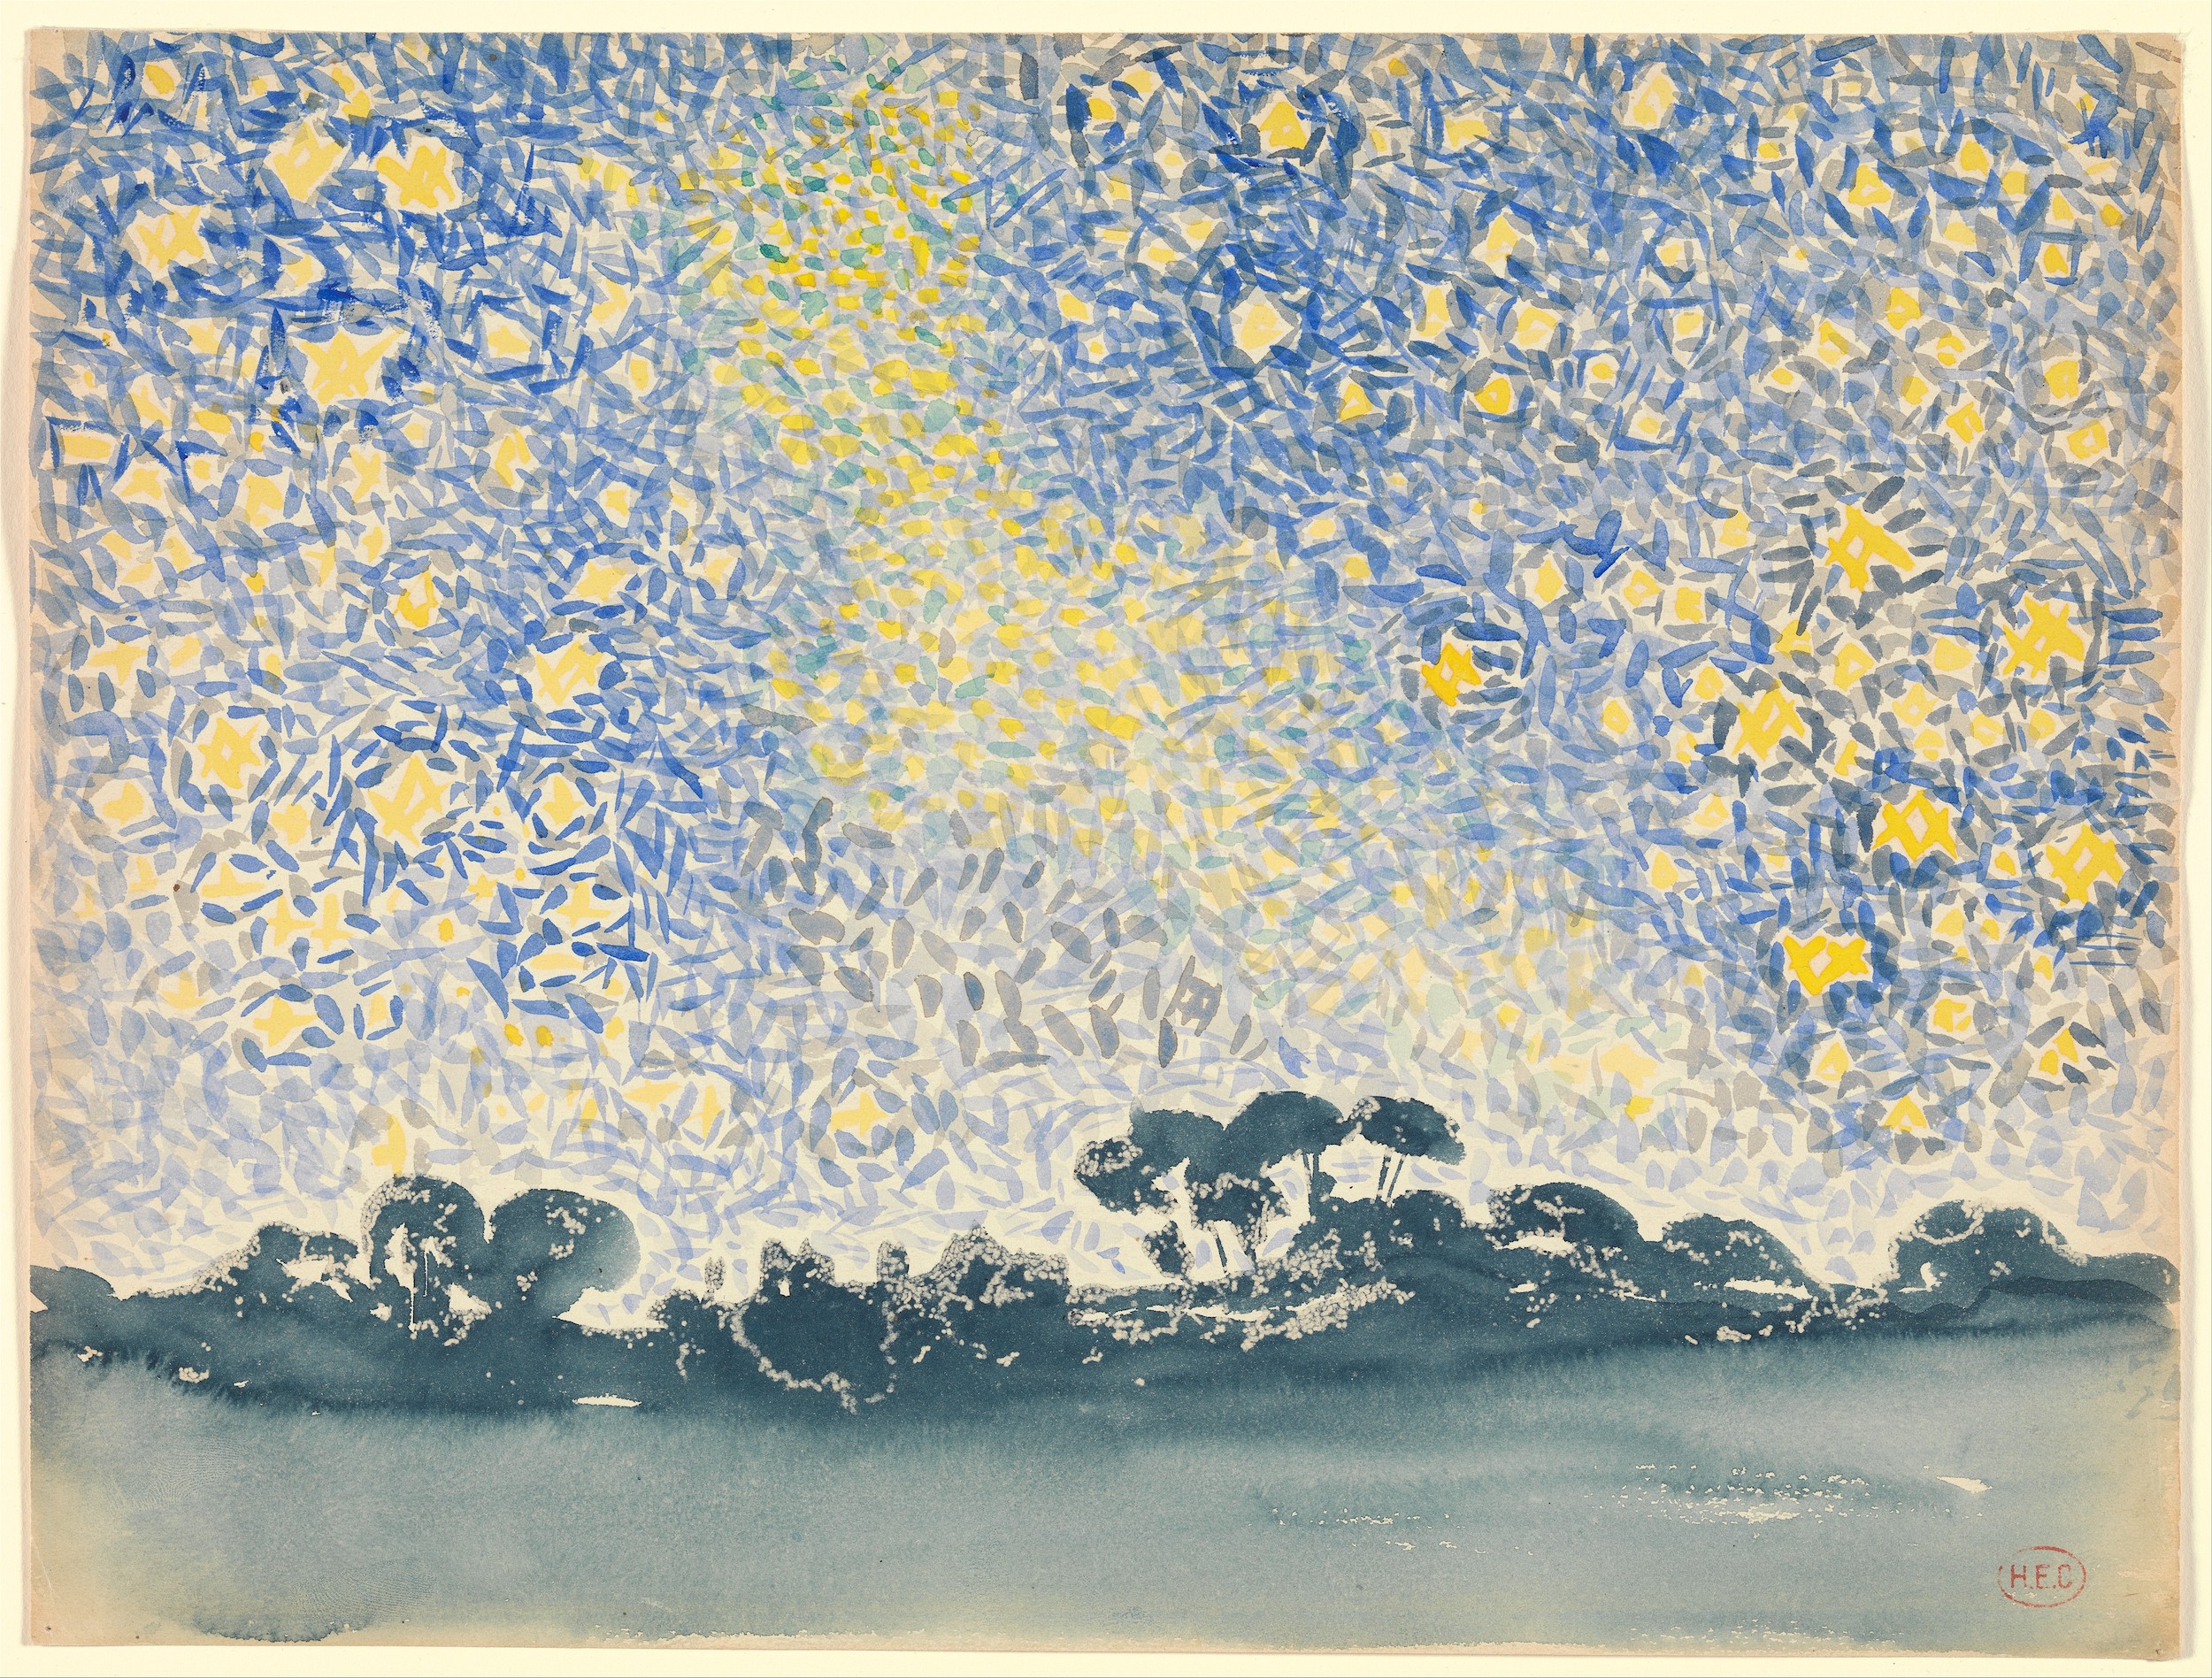 星光燦爛的風景 by Henri-Edmond Cross - 約 1905 - 1908 年 - 24.4 x 32.1 厘米 